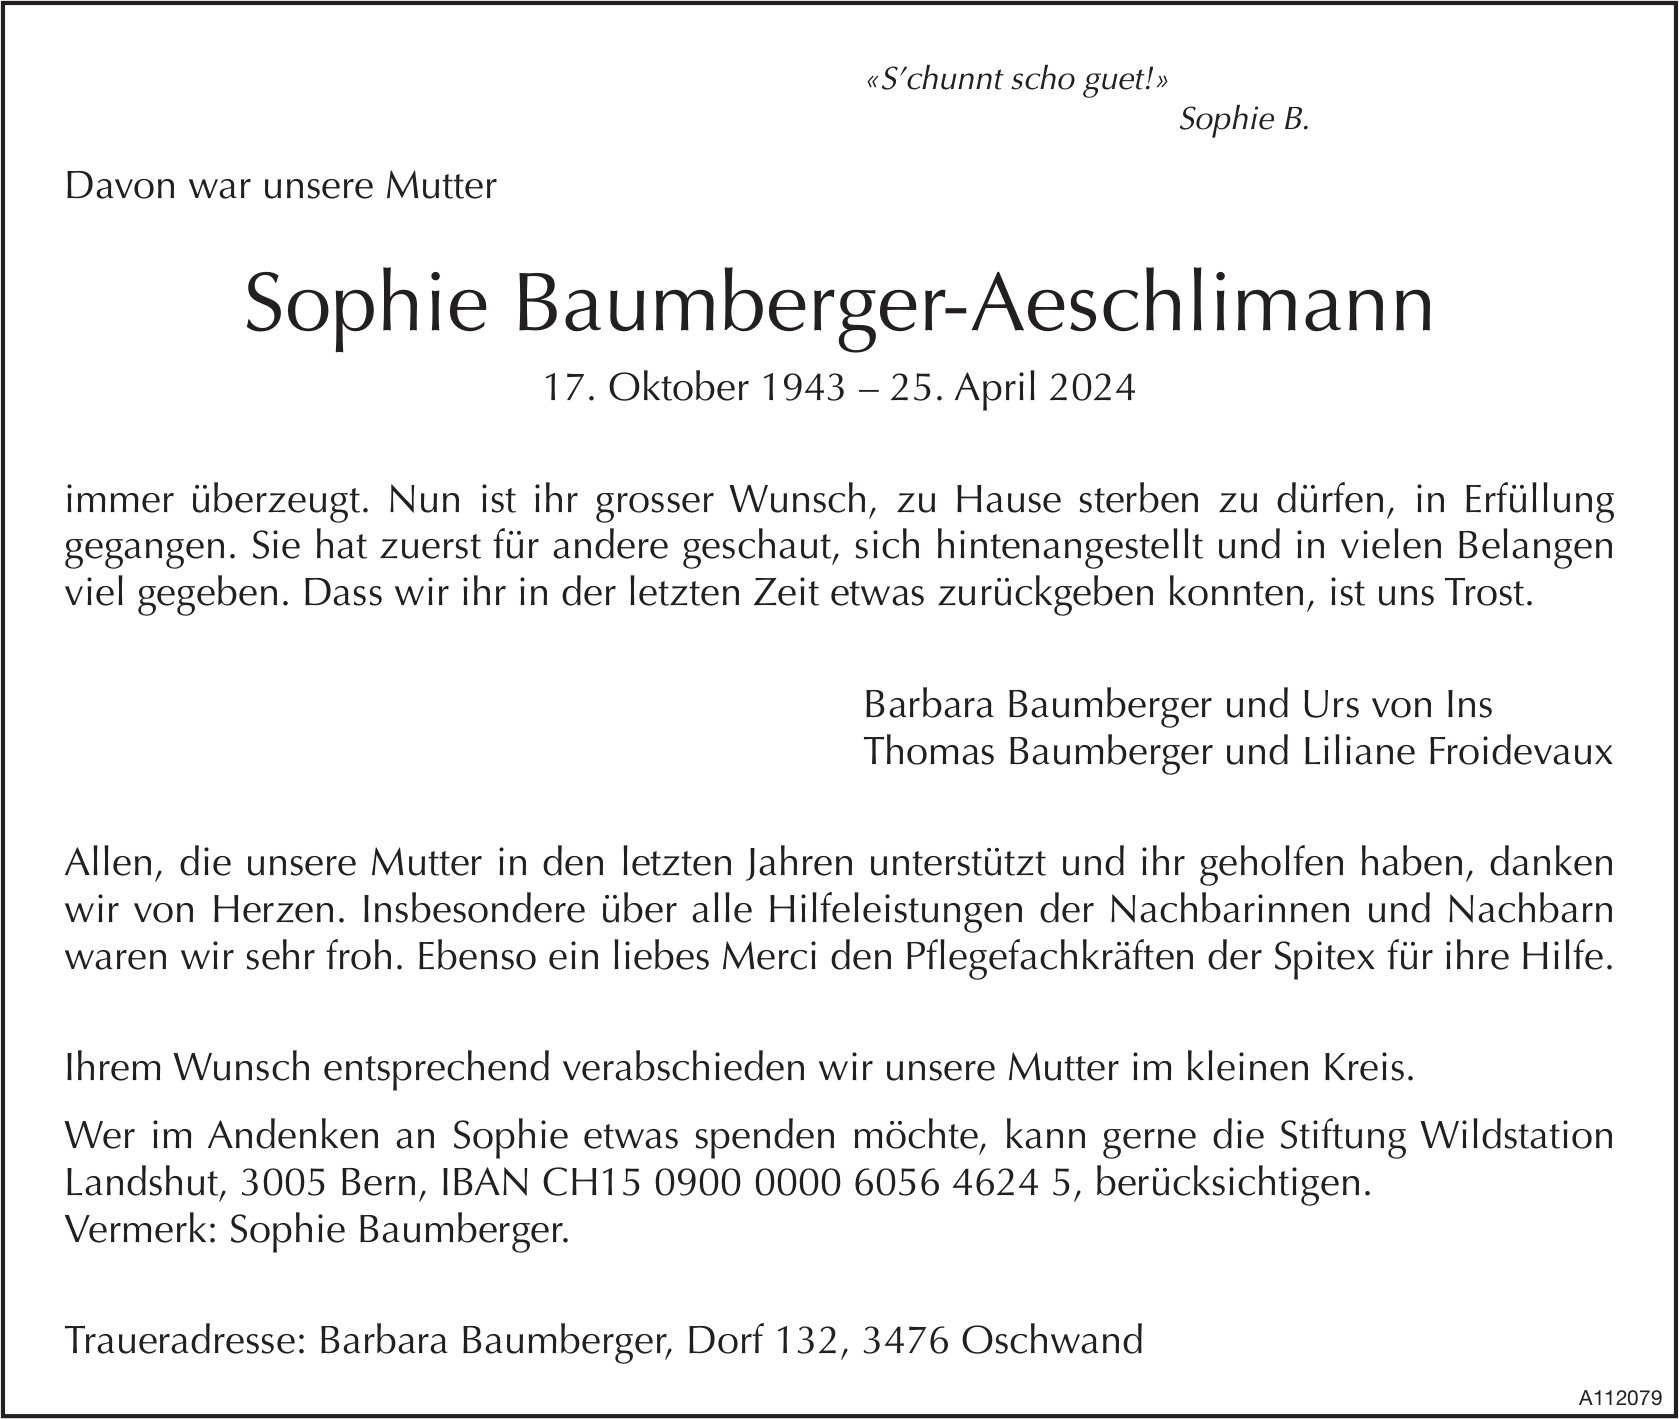 Sophie Baumberger-Aeschlimann, April 2024 / TA